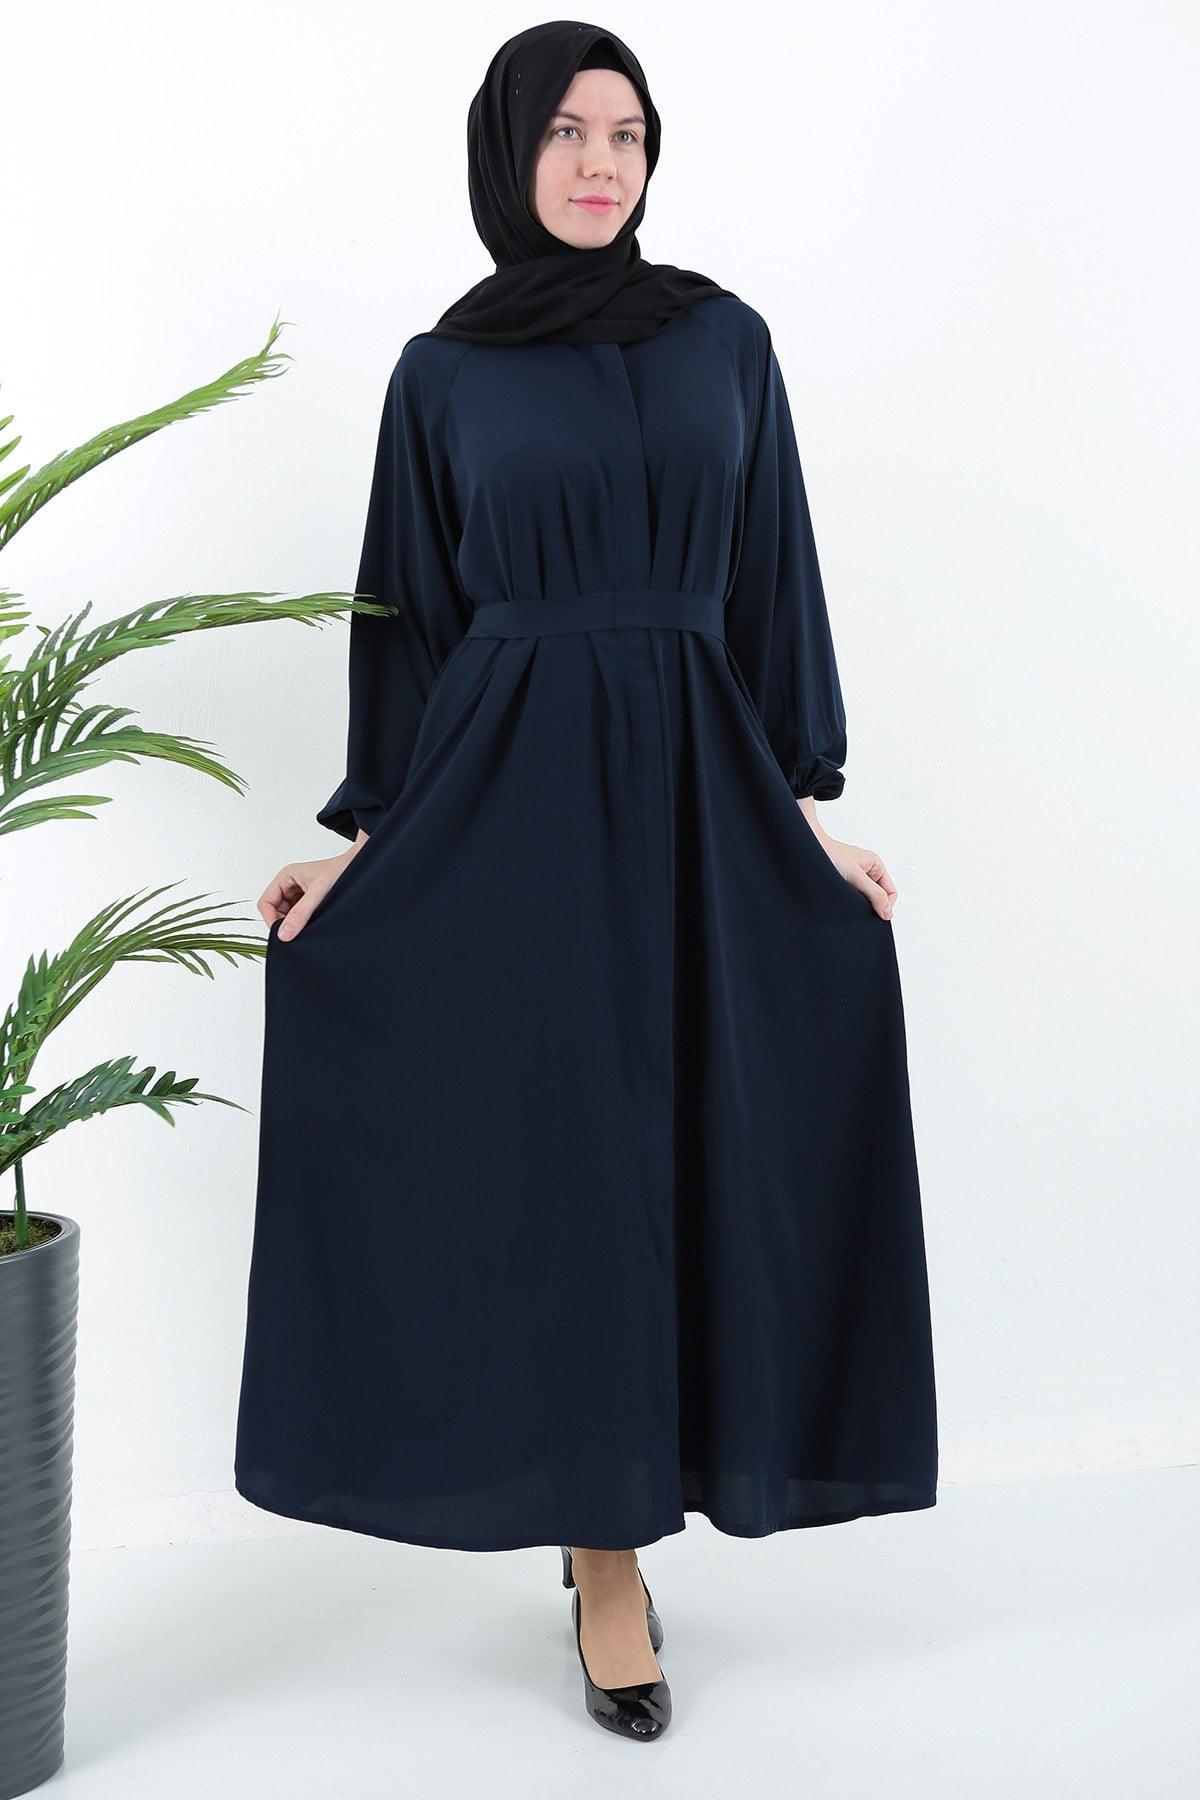 Navy Blue Zippered Belted Pocket Abaya Hijab - Swordslife